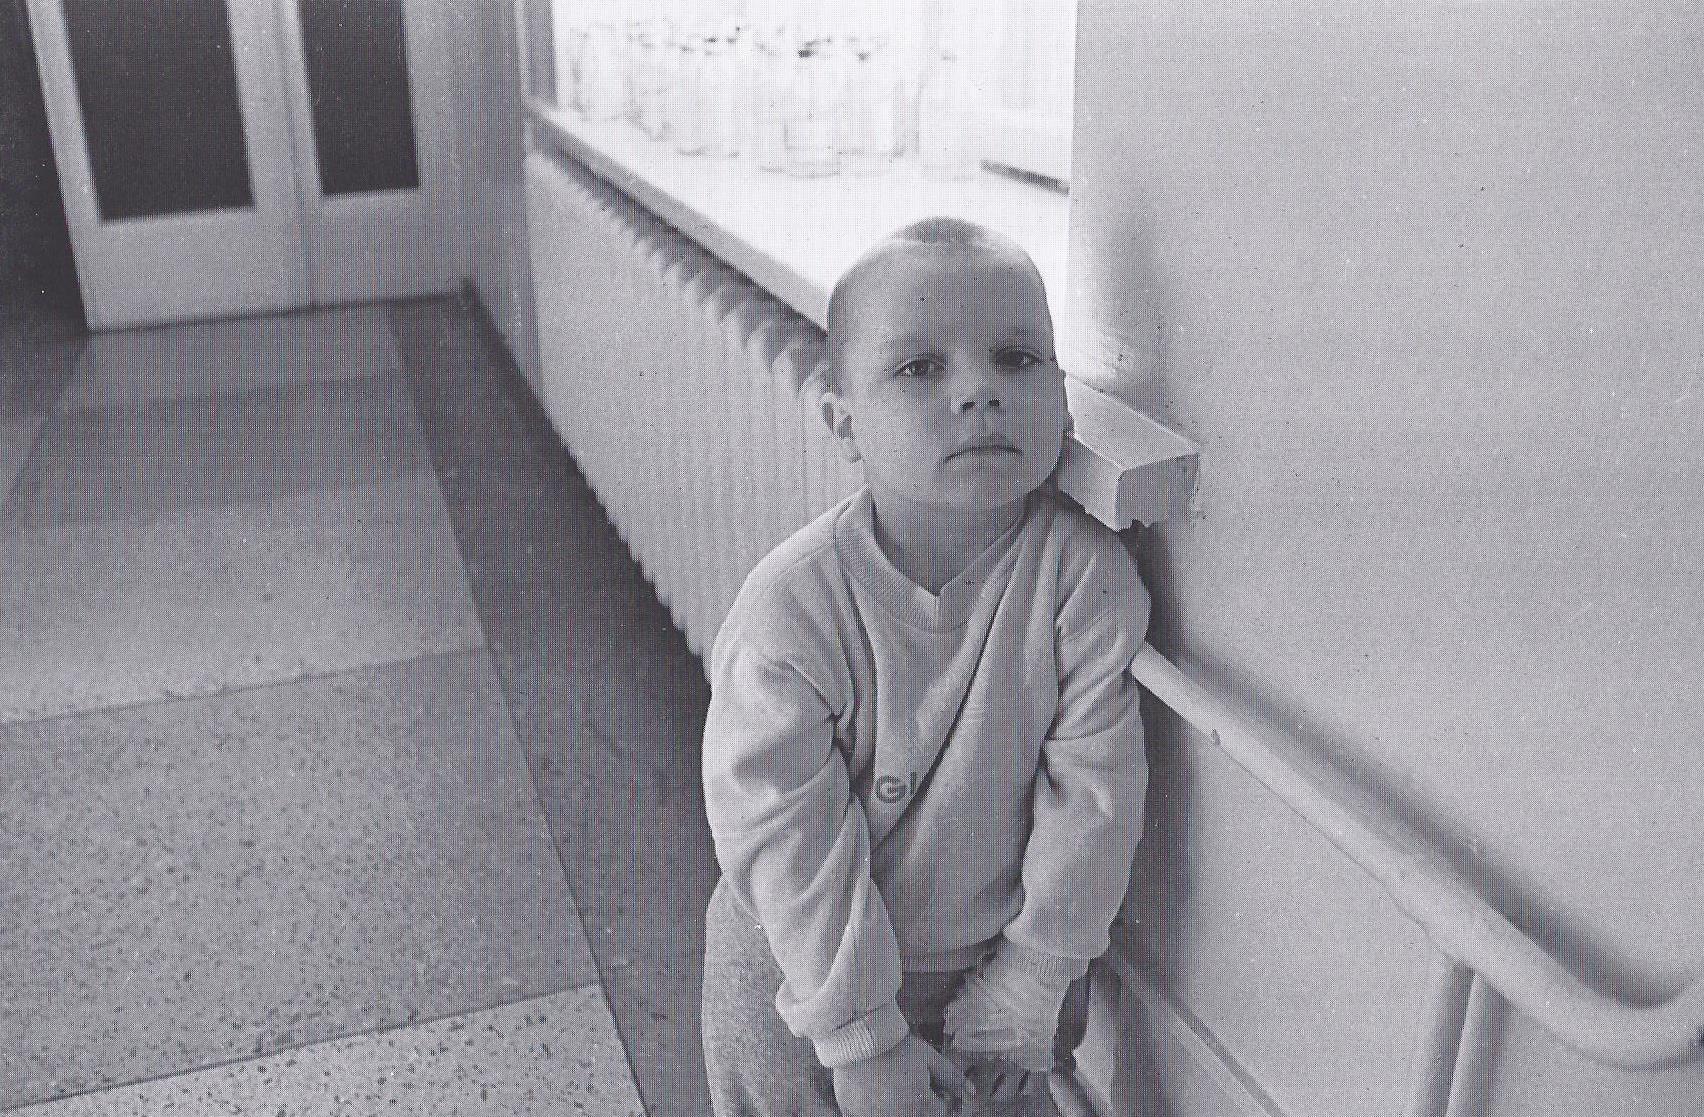 An der Fensterbank. Vitalij war ein Waisenkind, er starb an Leukämie. (1995)